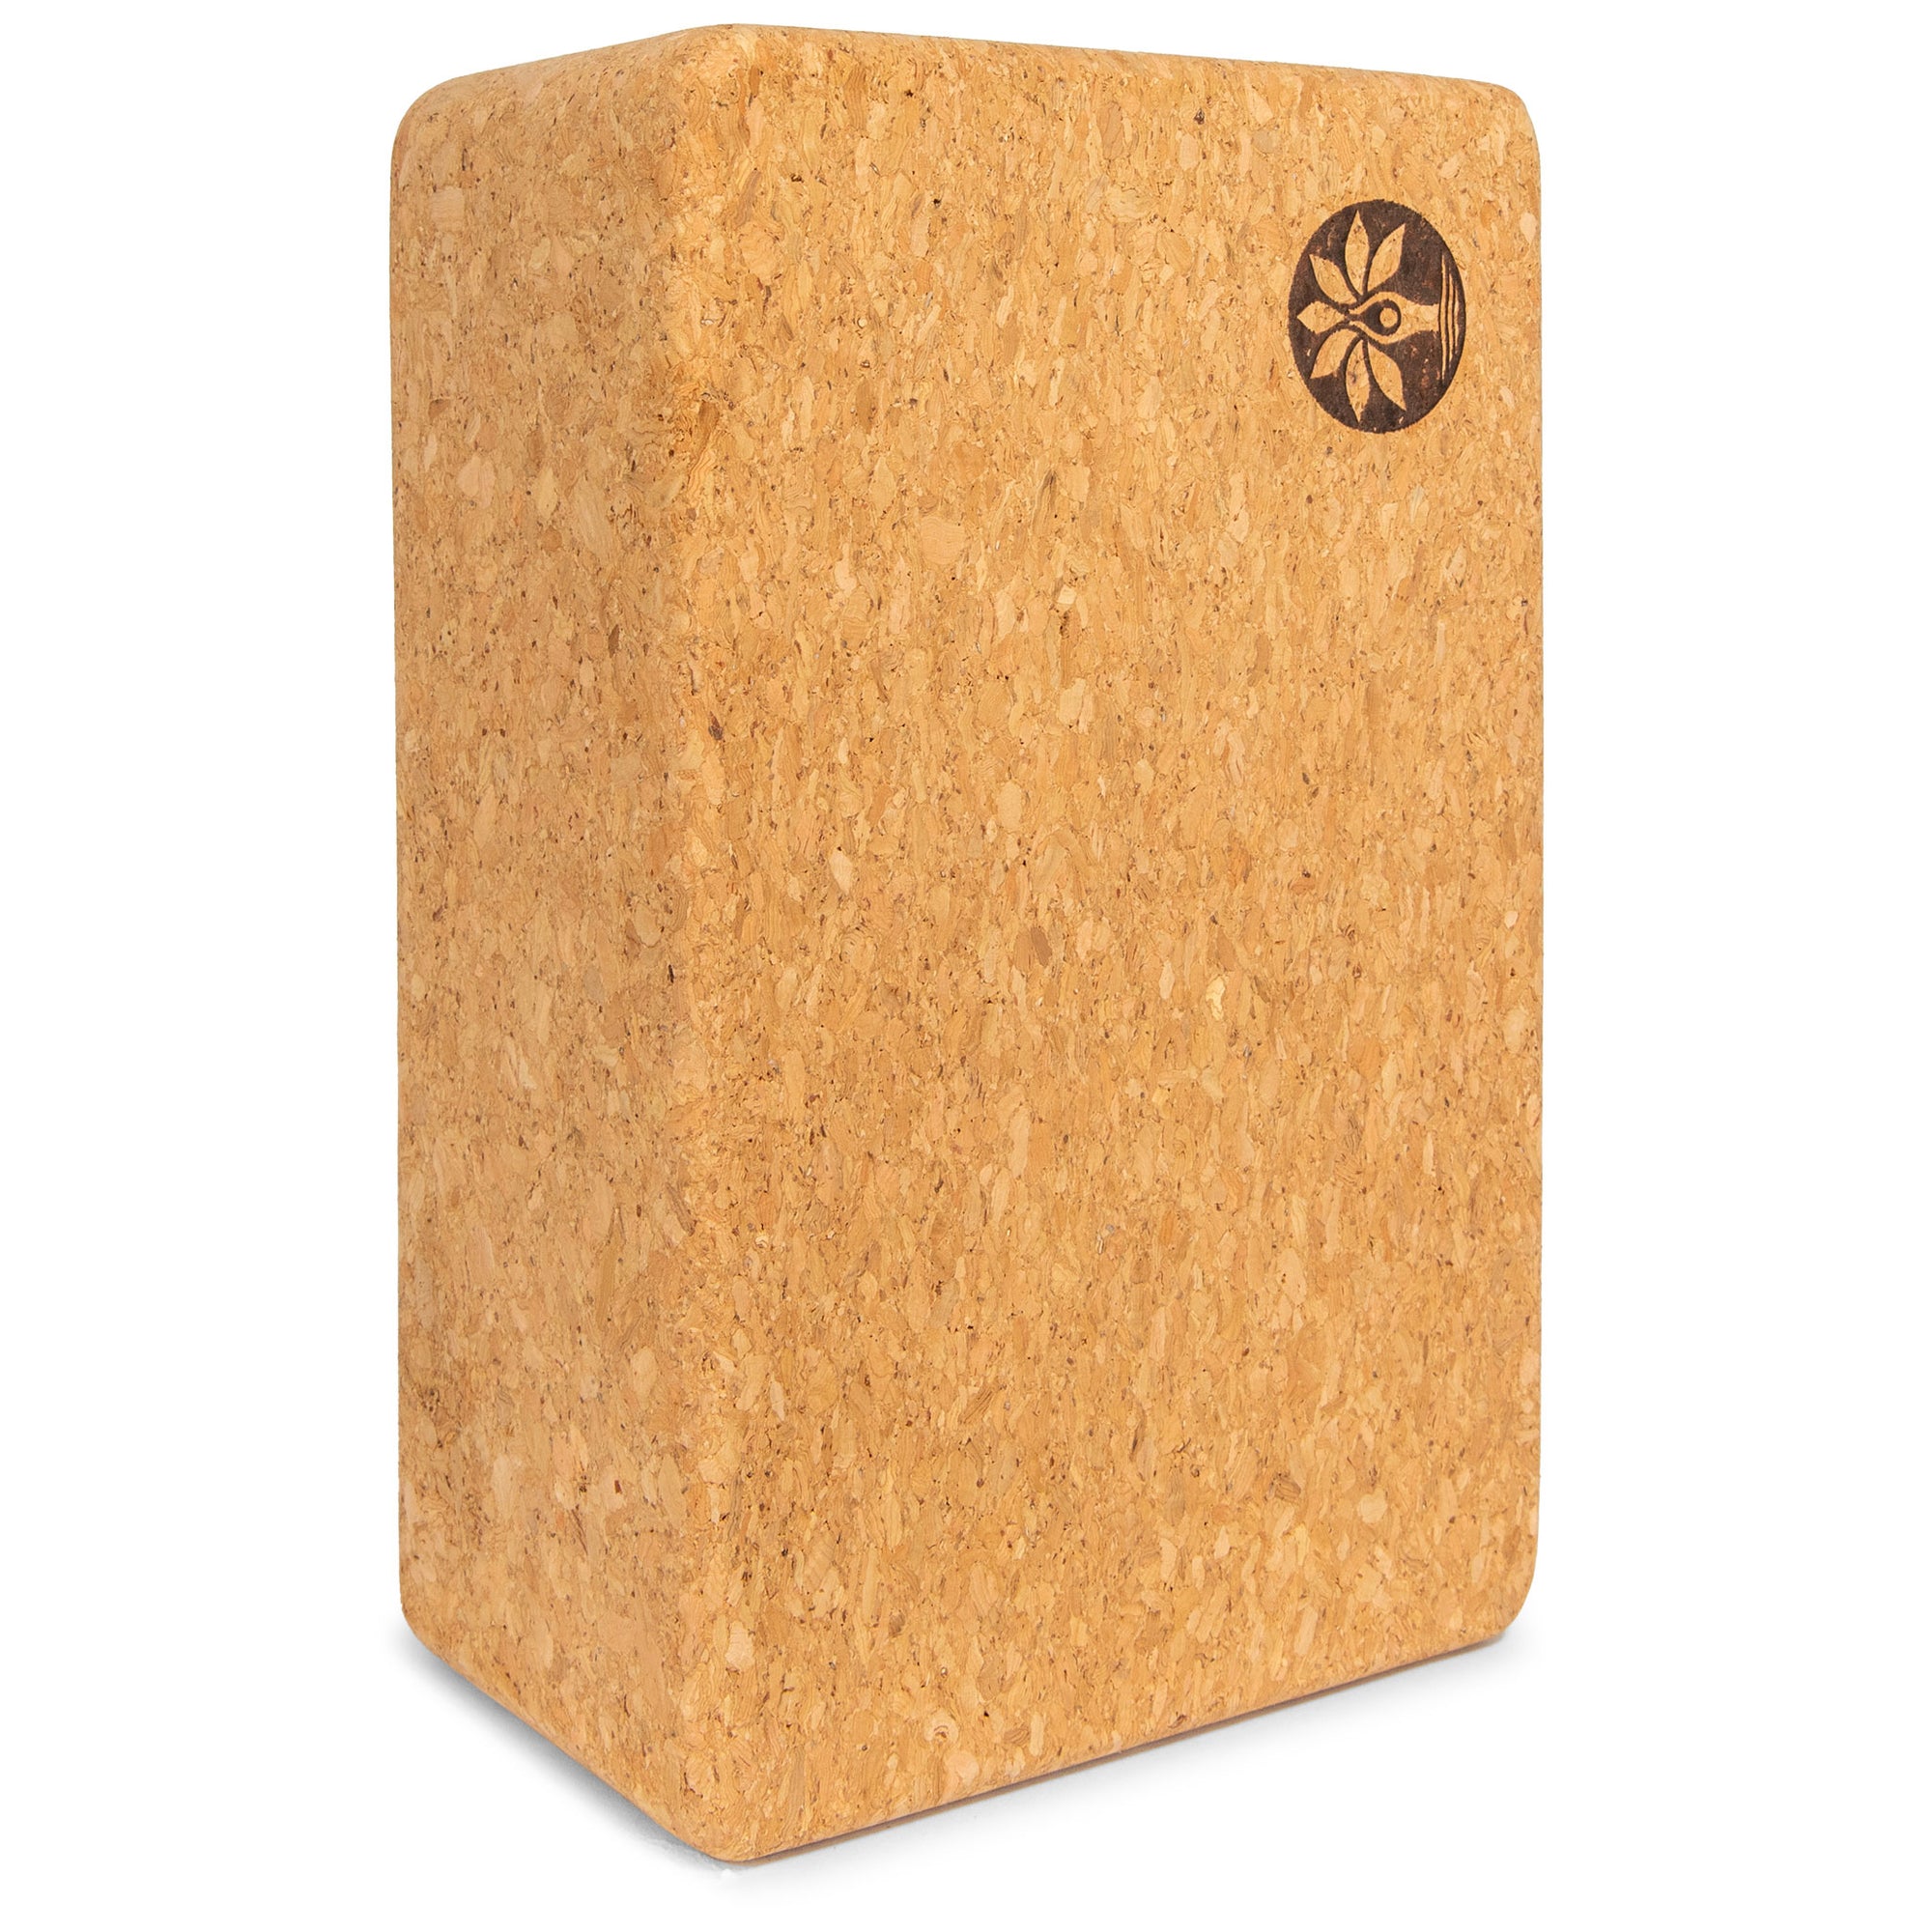 The Best Eco-Friendly Cork Yoga Block - Mountain Magic Design